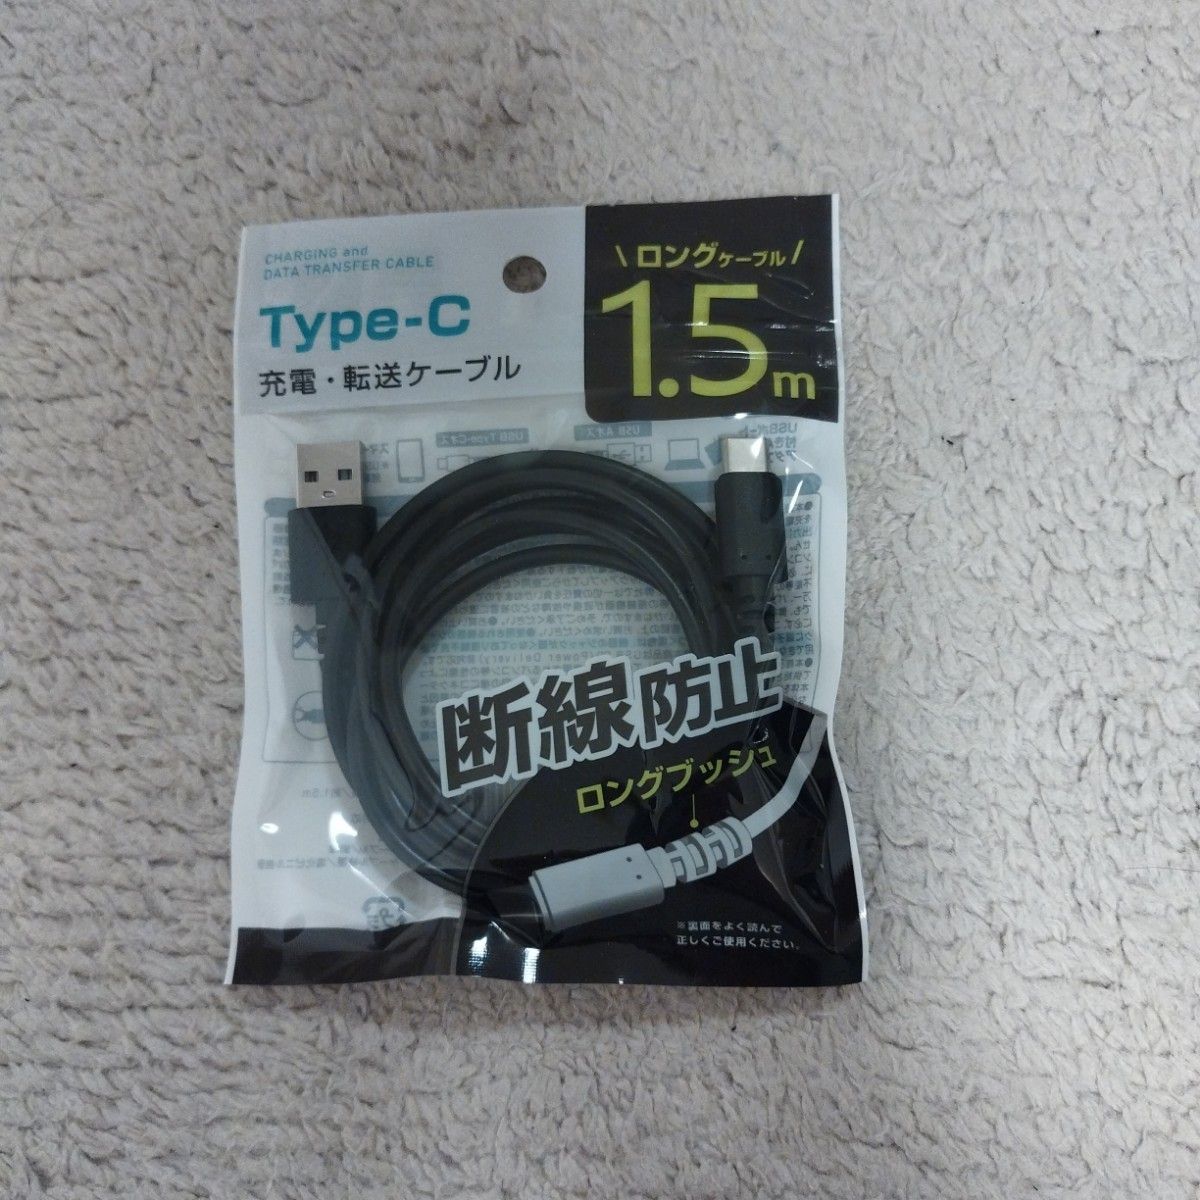 USB type cーtype-Aケーブル 1.5m